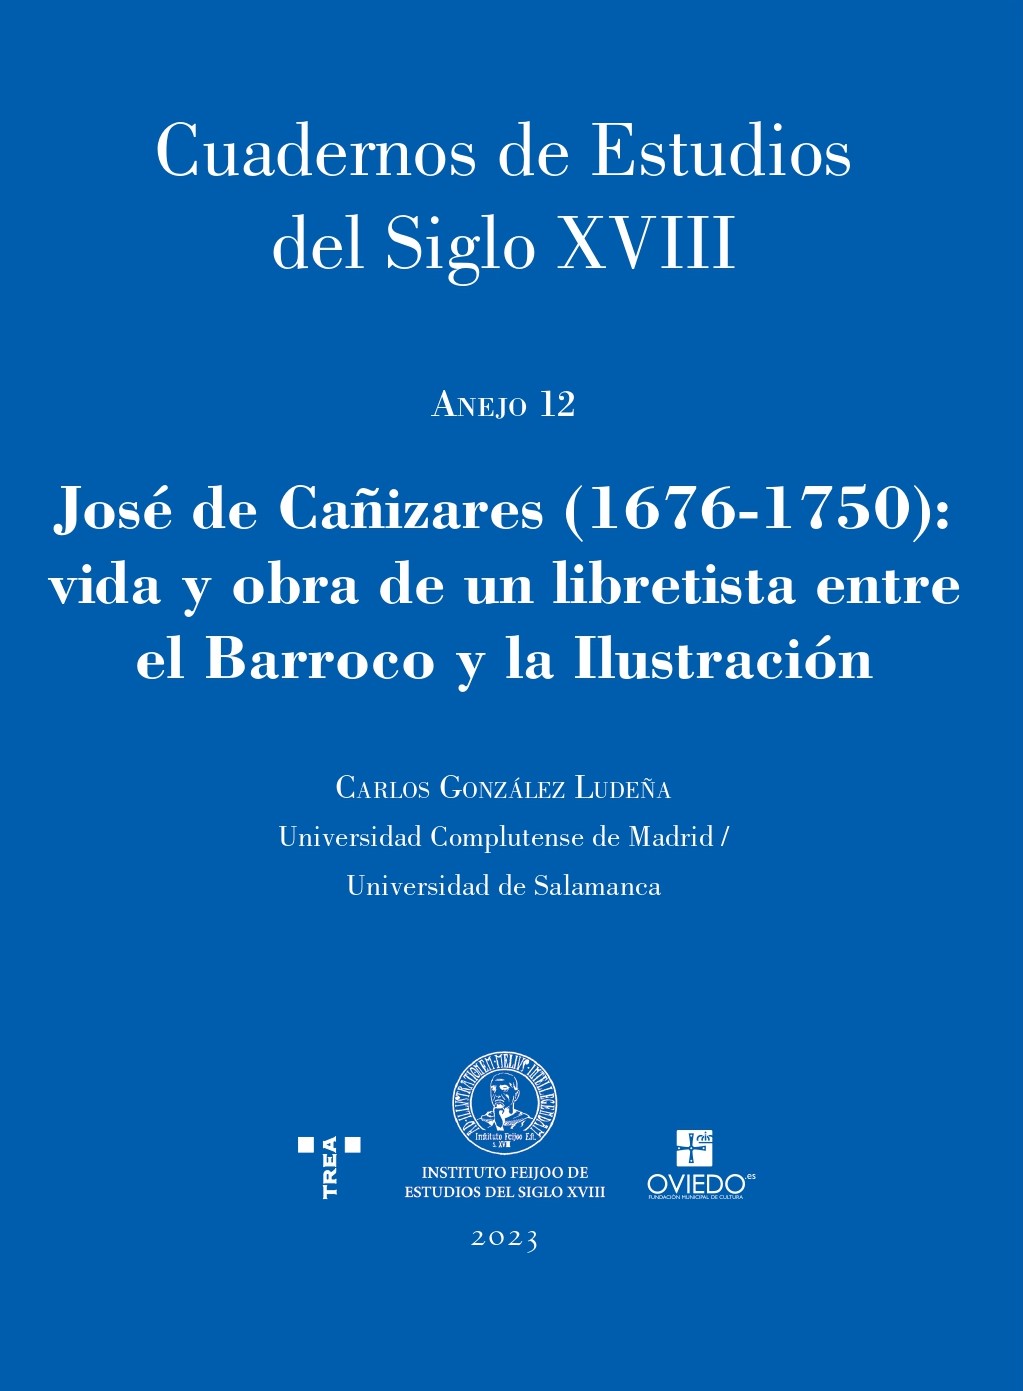 Imagen de portada del libro José de Cañizares (1676-1750)